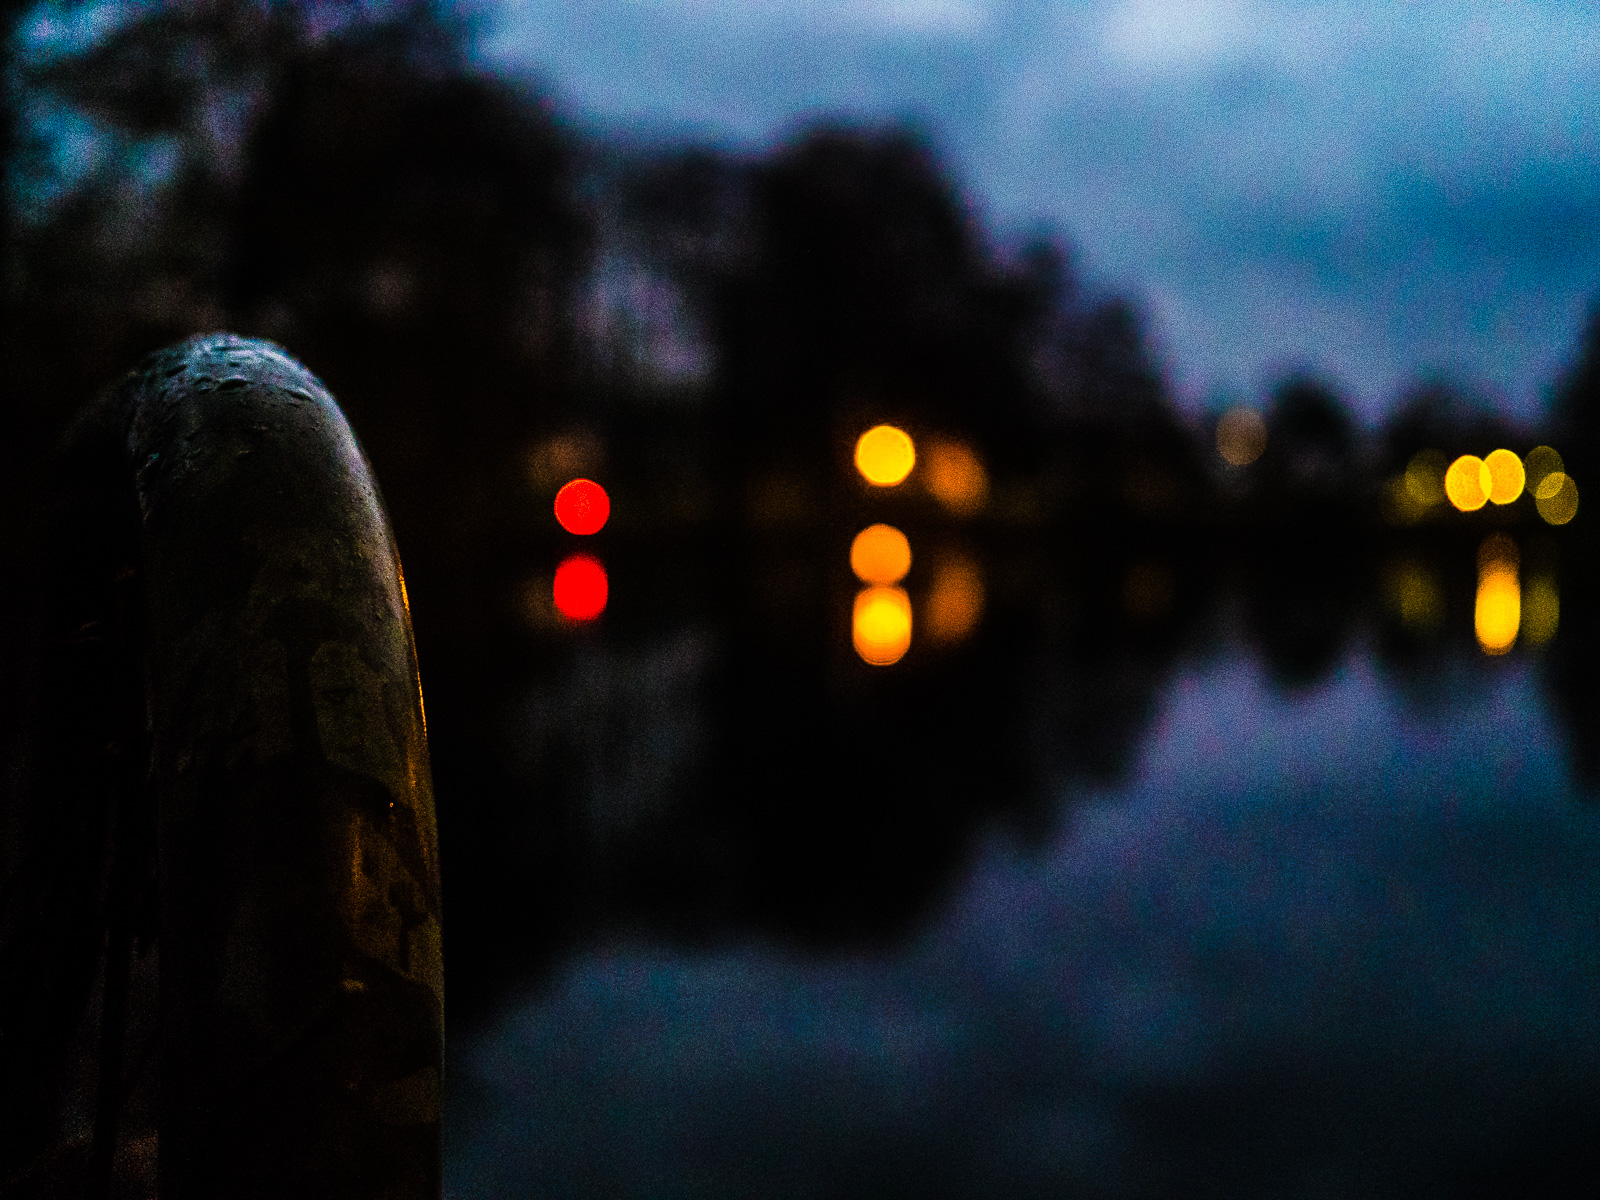 Ansicht eines Teichs im Dämmerlicht, unscharf, nur der metallene Handlauf einer Badetreppe links ist scharf. Eine Baumreihe und darunter diverse Lichter, gelbe und rote, spiegeln sich im Wasser.